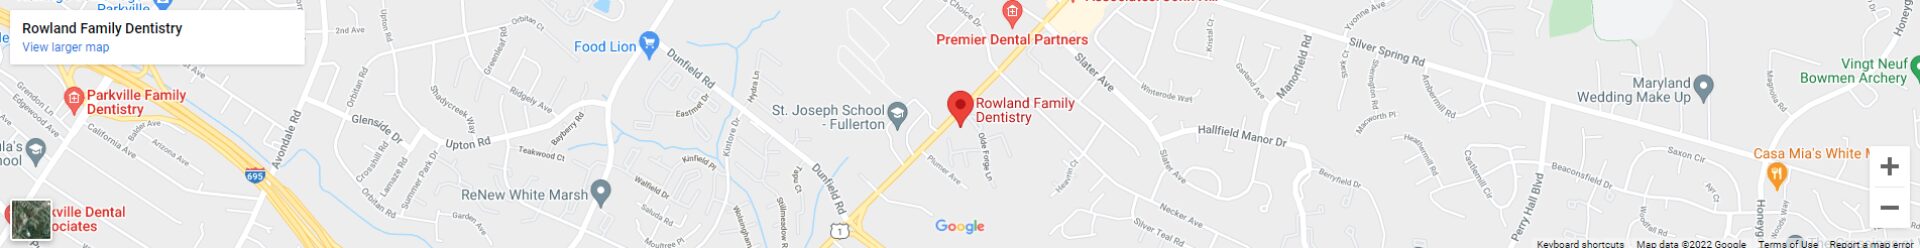 Rowland Family Dentistry